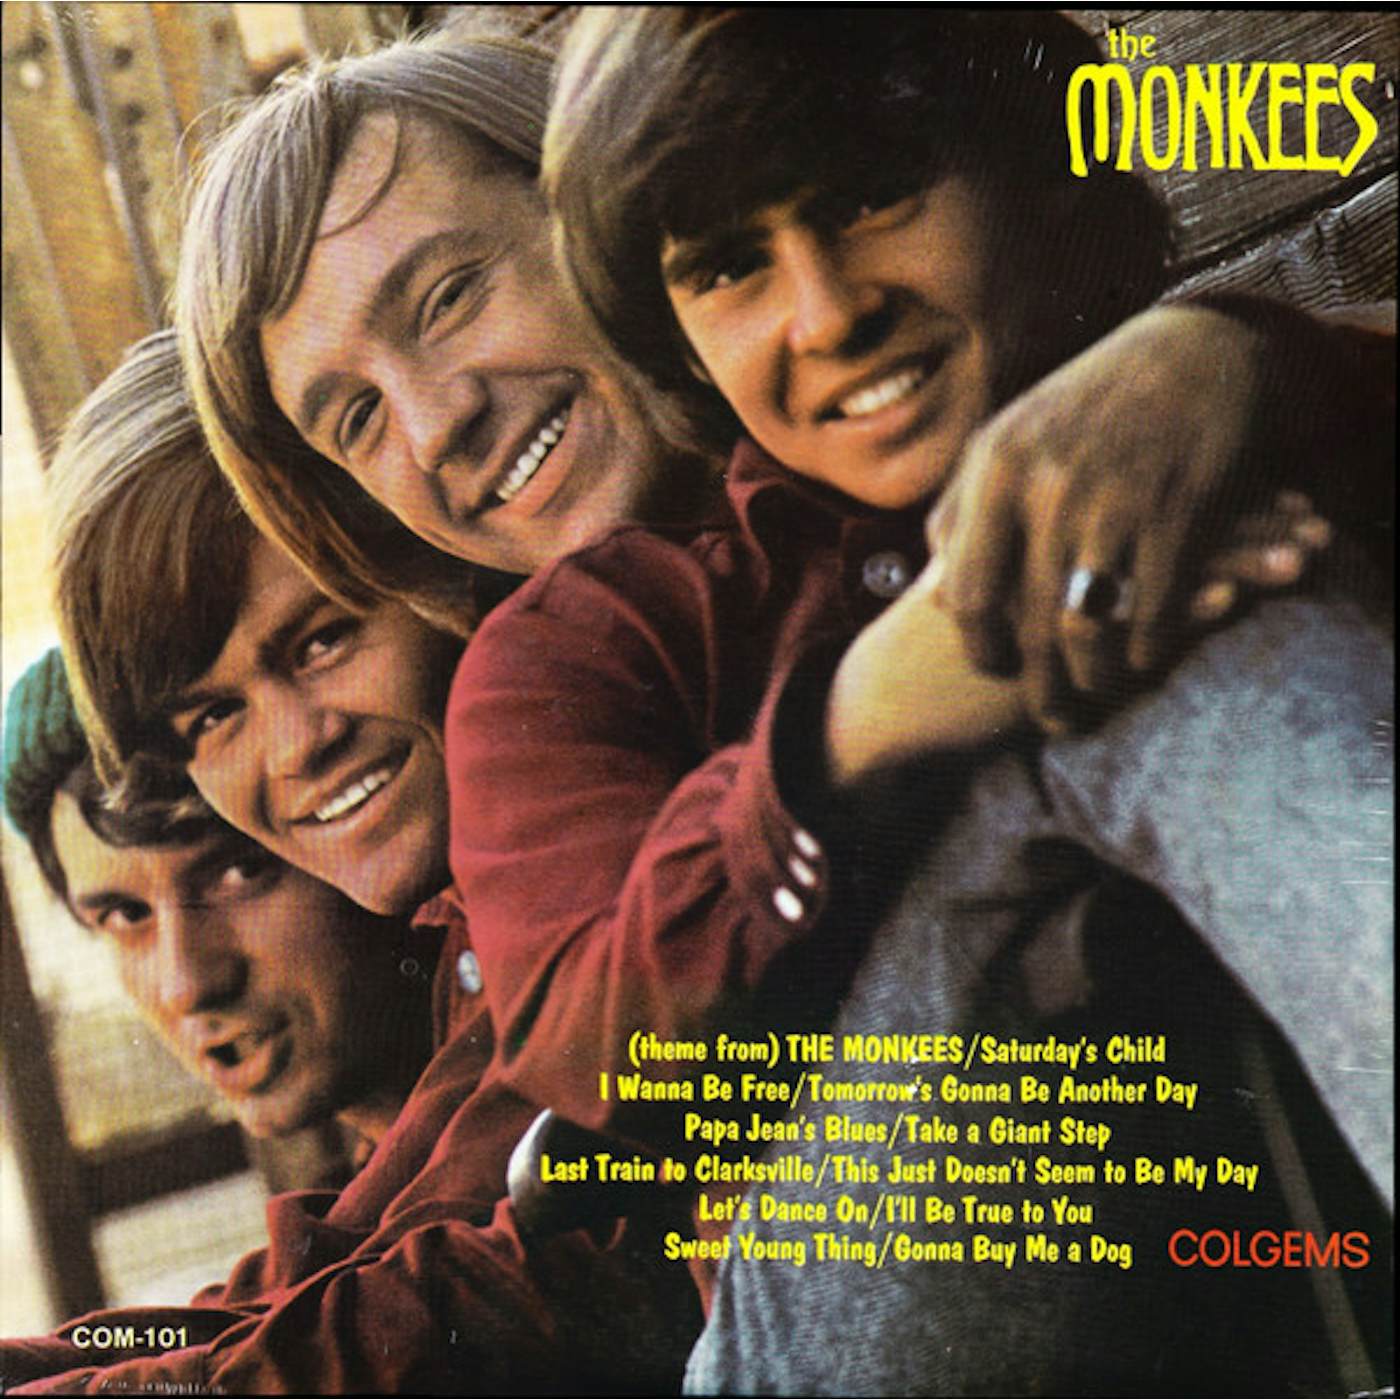 The Monkees Vinyl Record